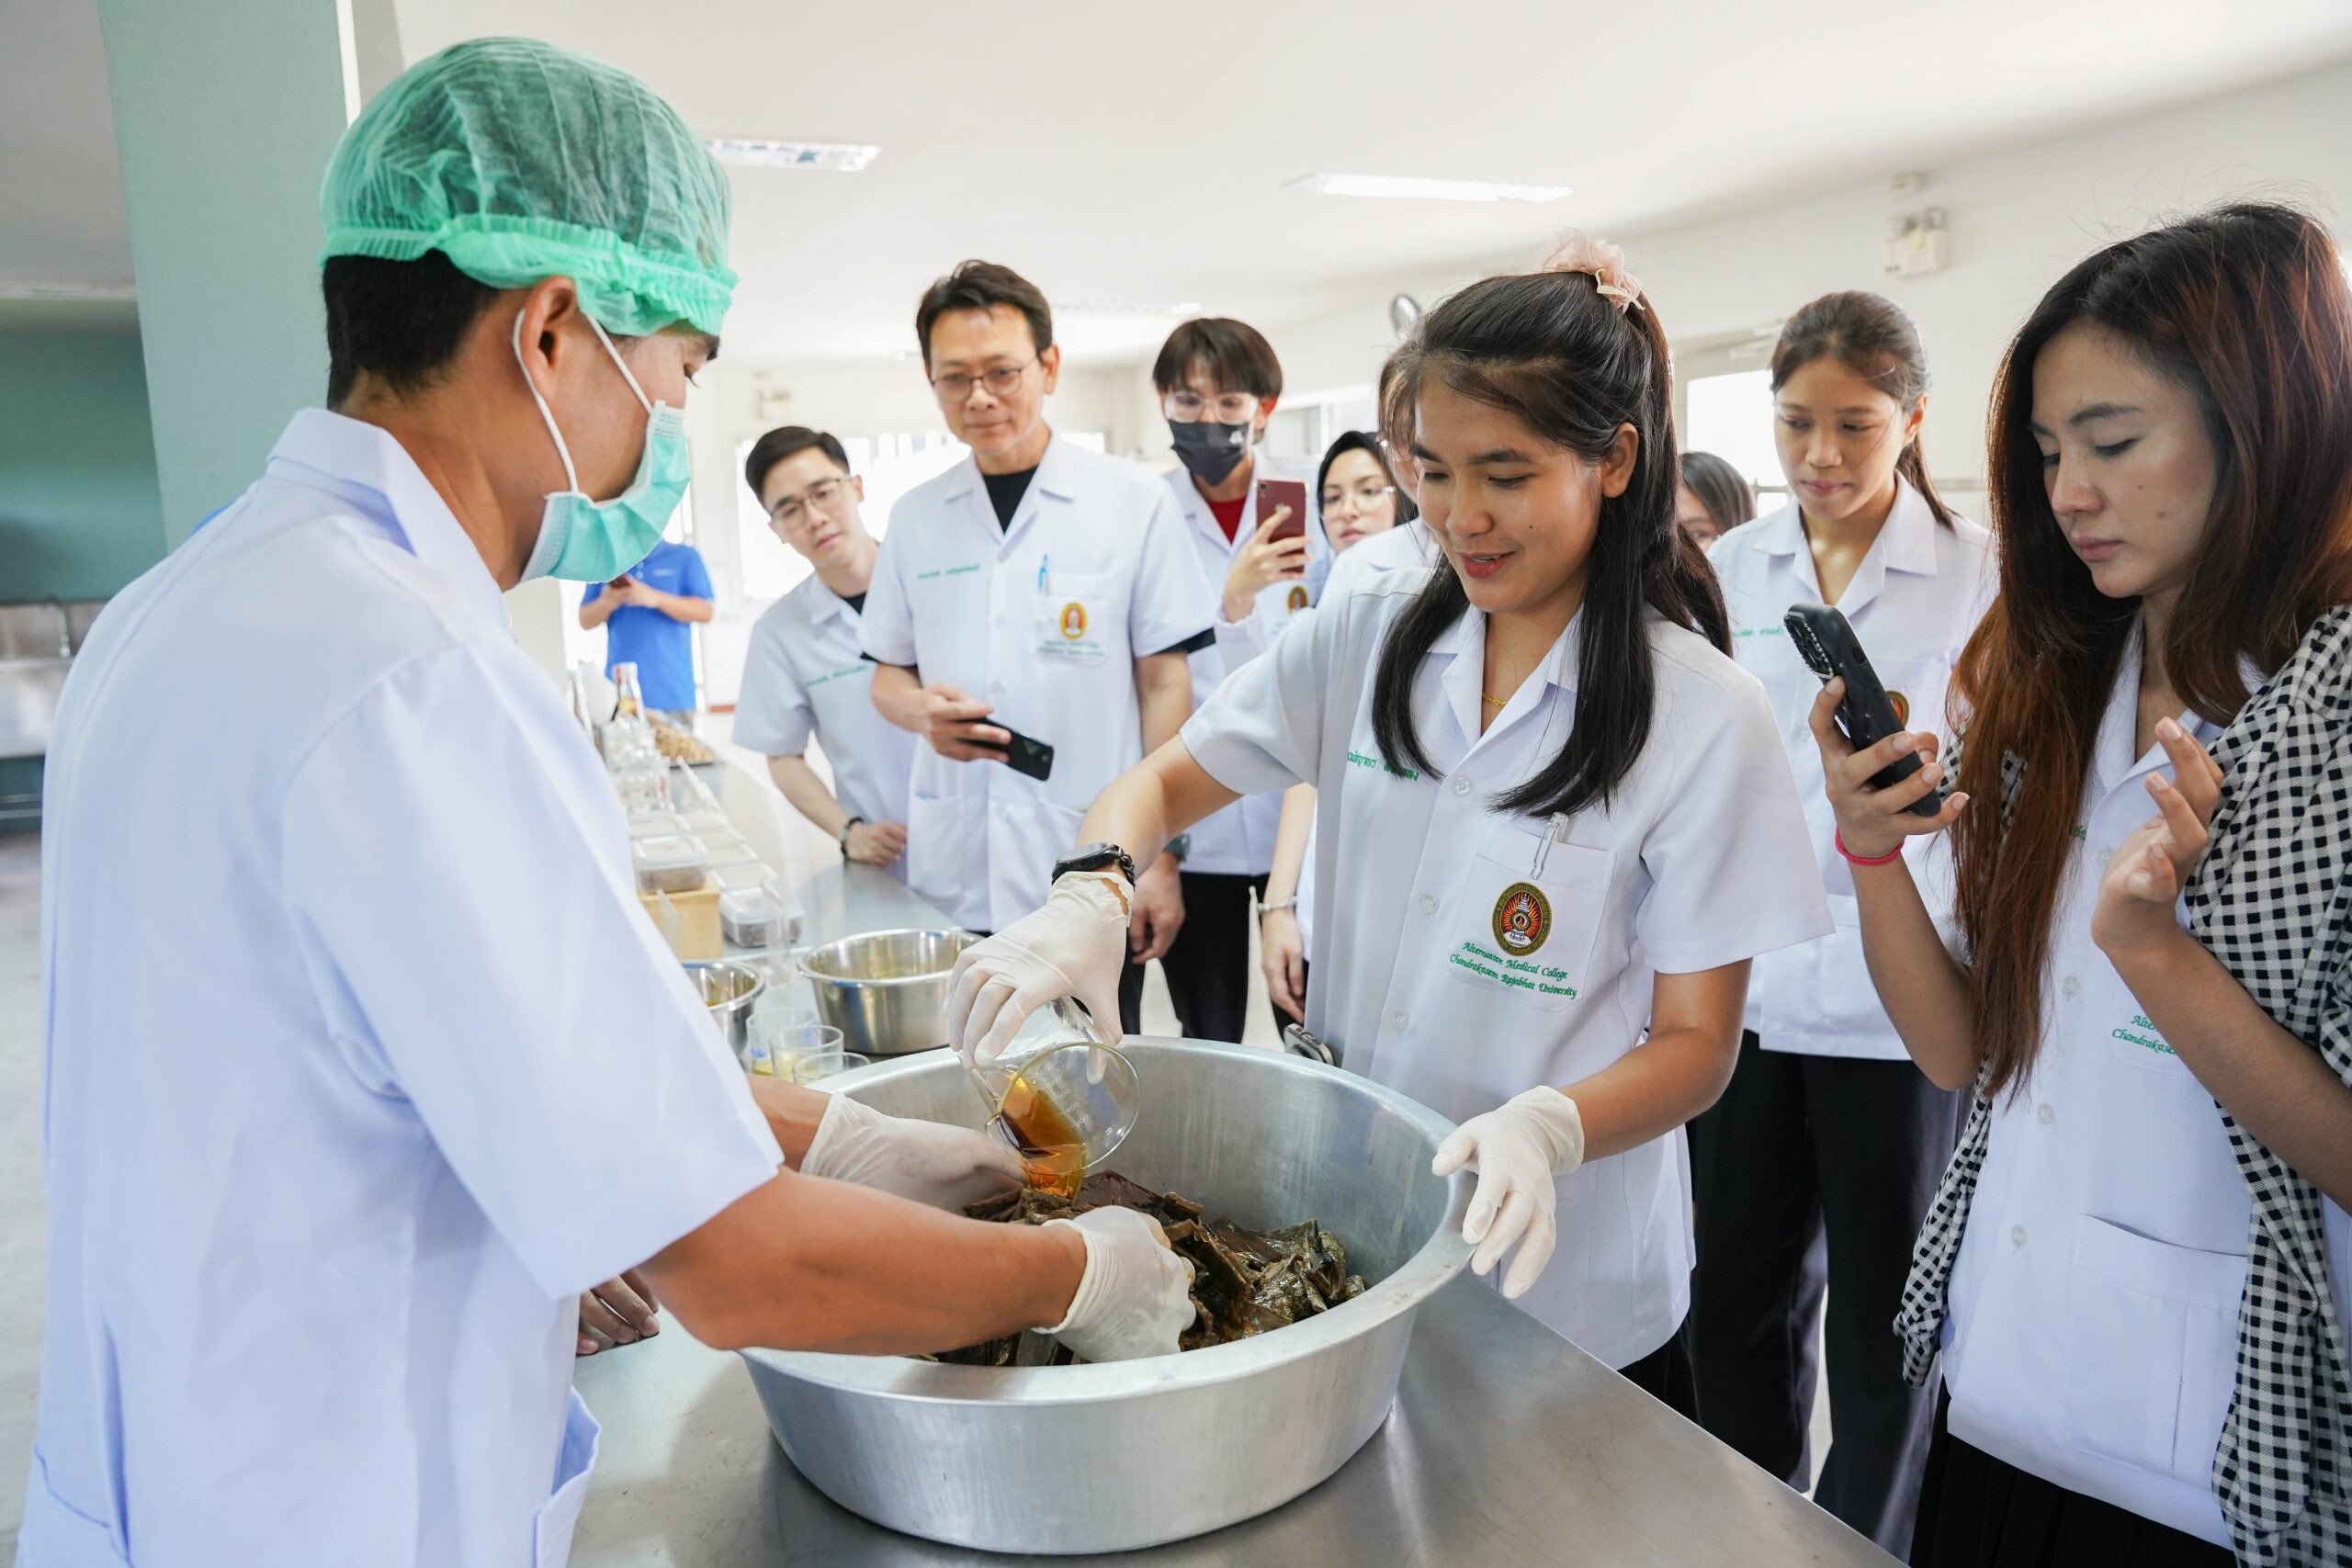 คลินิกการแพทย์แผนจีนหัวเฉียว ต้อนรับนักศึกษาแพทย์แผนจีน มหาวิทยาลัยราชภัฏจันทรเกษม ในโอกาสศึกษาดูงาน ณ ศูนย์การเรียนรู้สมุนไพรจีนแบบครบวงจร